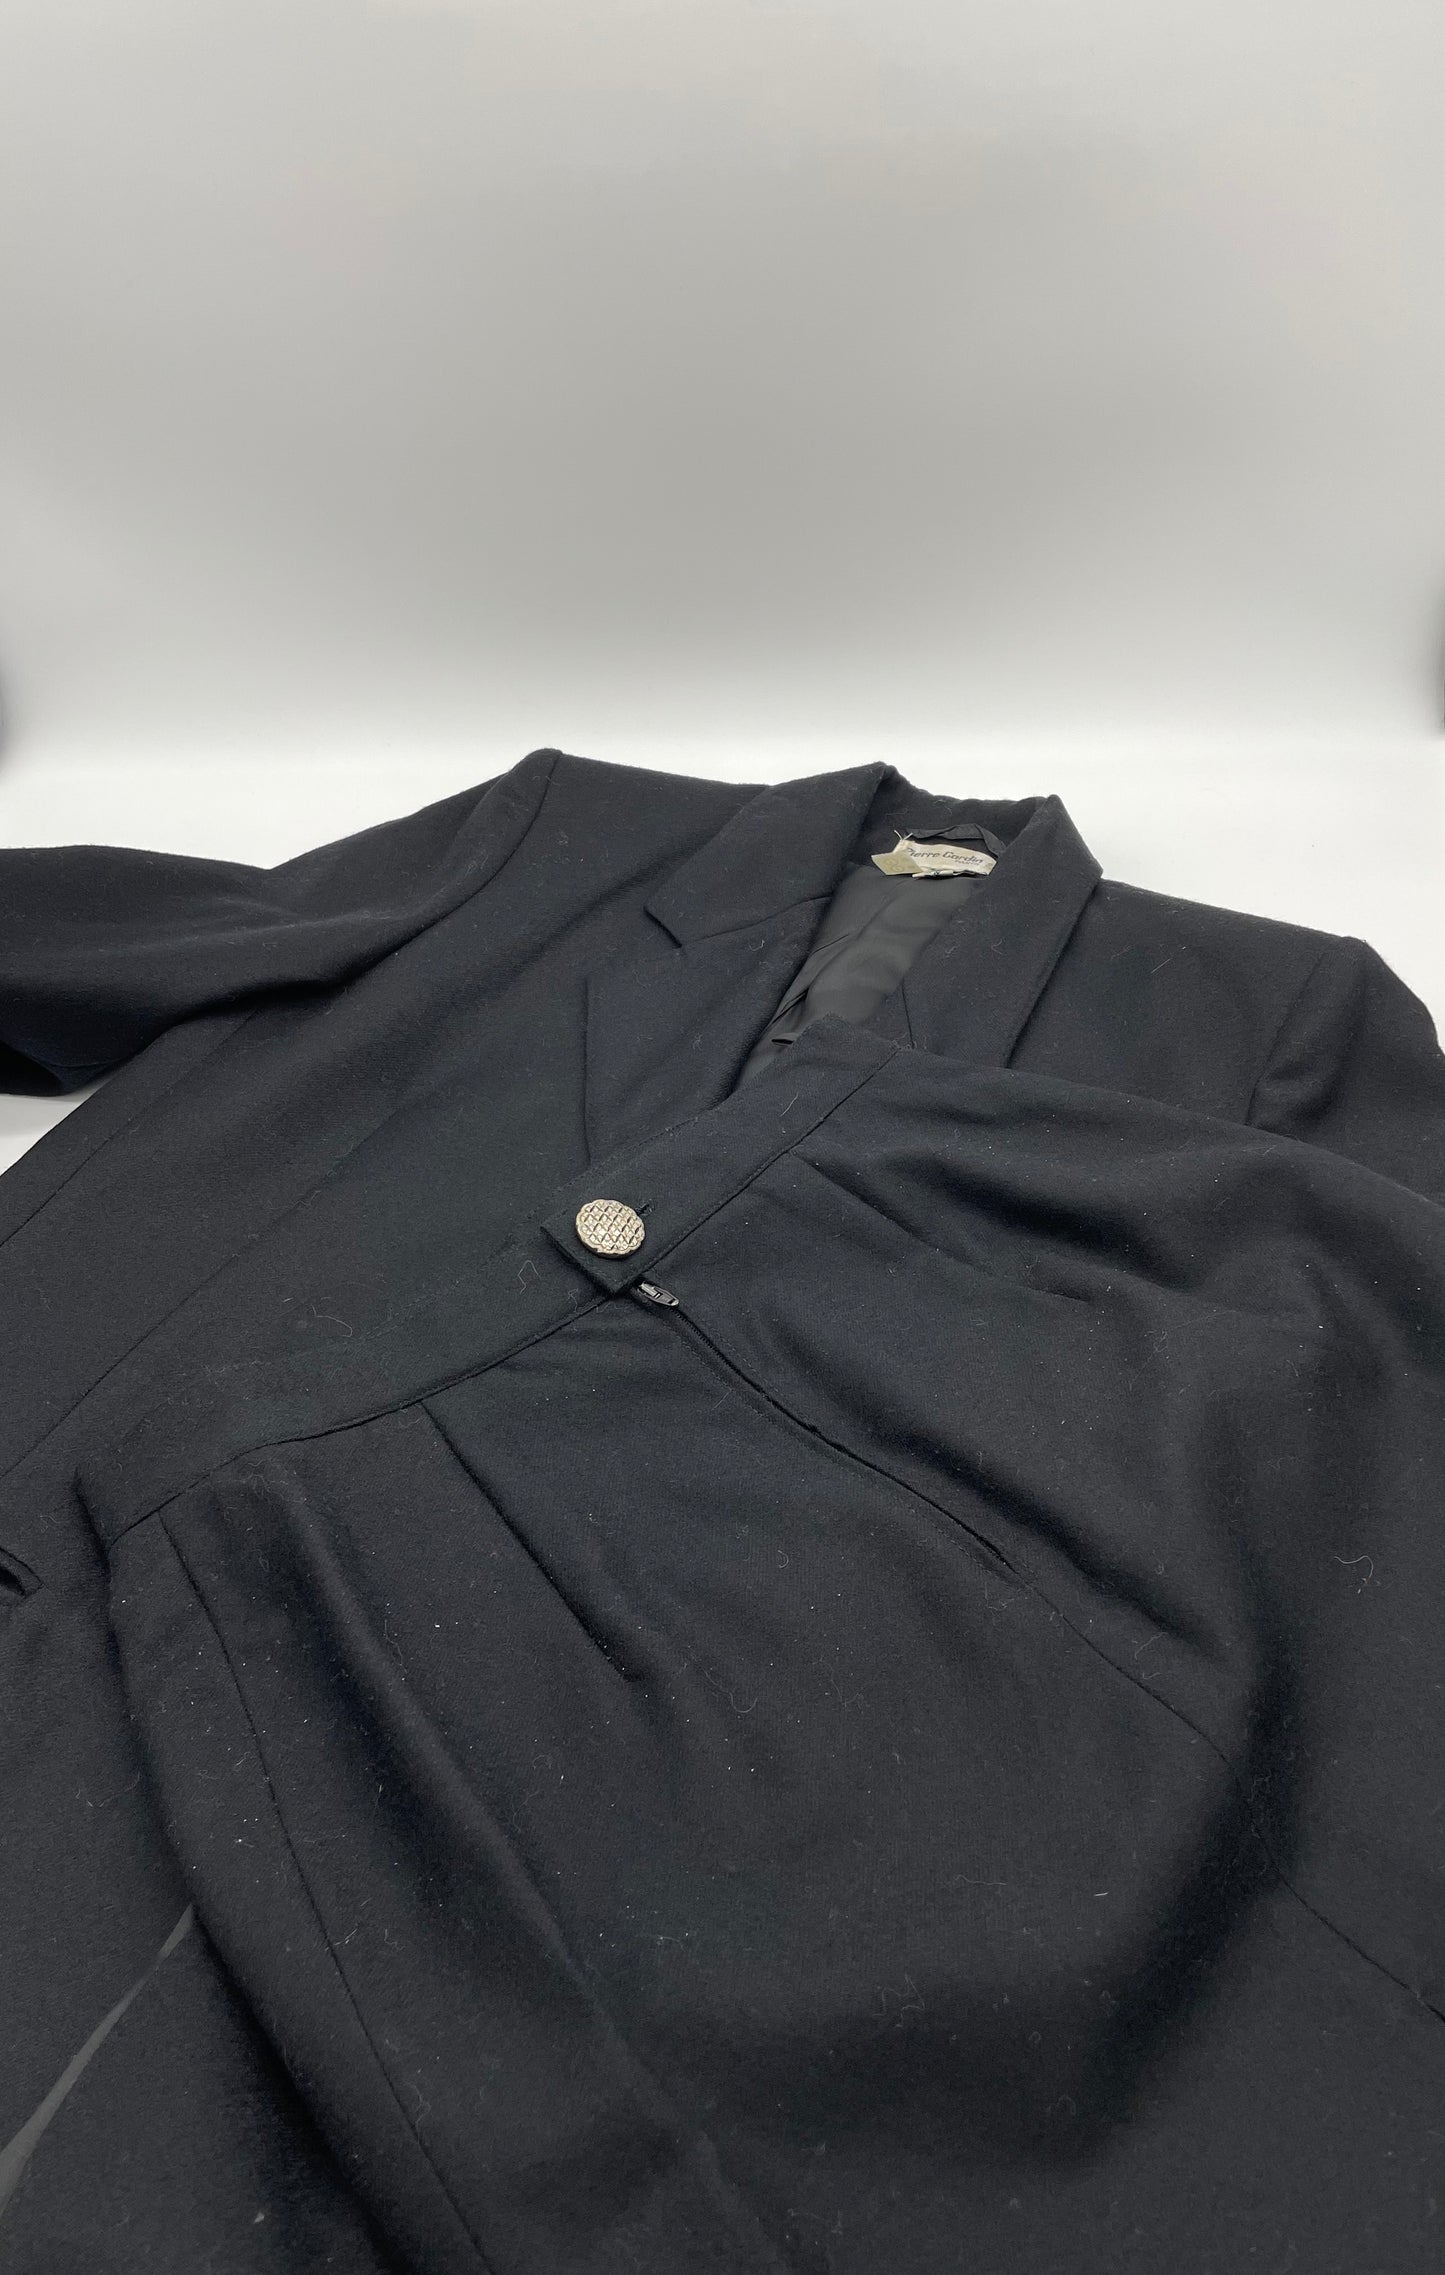 Pierre Cardin suit